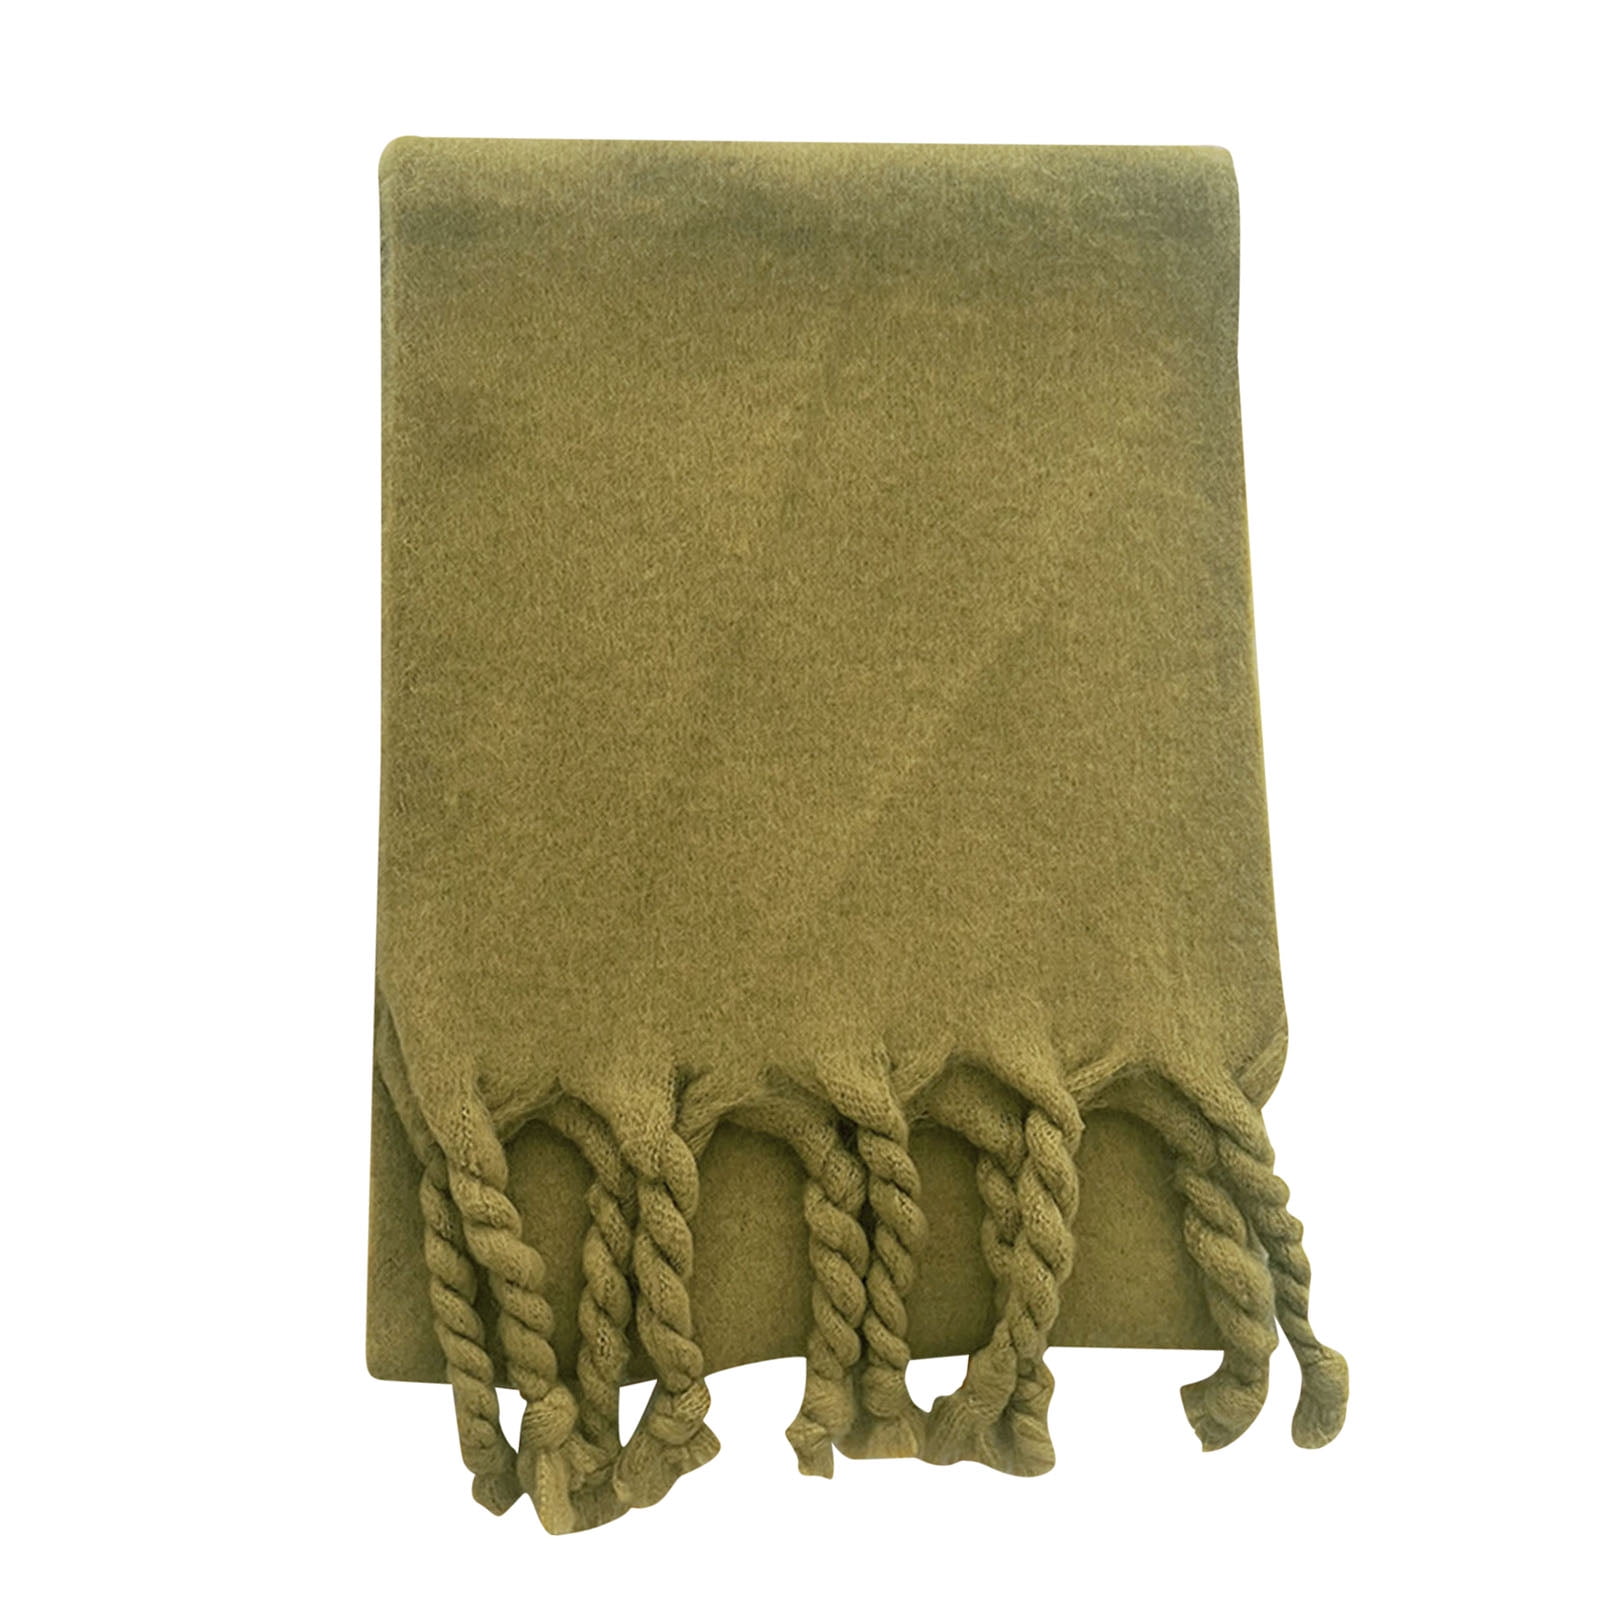 TWIFER Women Fall Winter Scarf Classic Tassel Plaid Scarf Warm Soft Chunky  Large Blanket Wrap Shawl Scarves